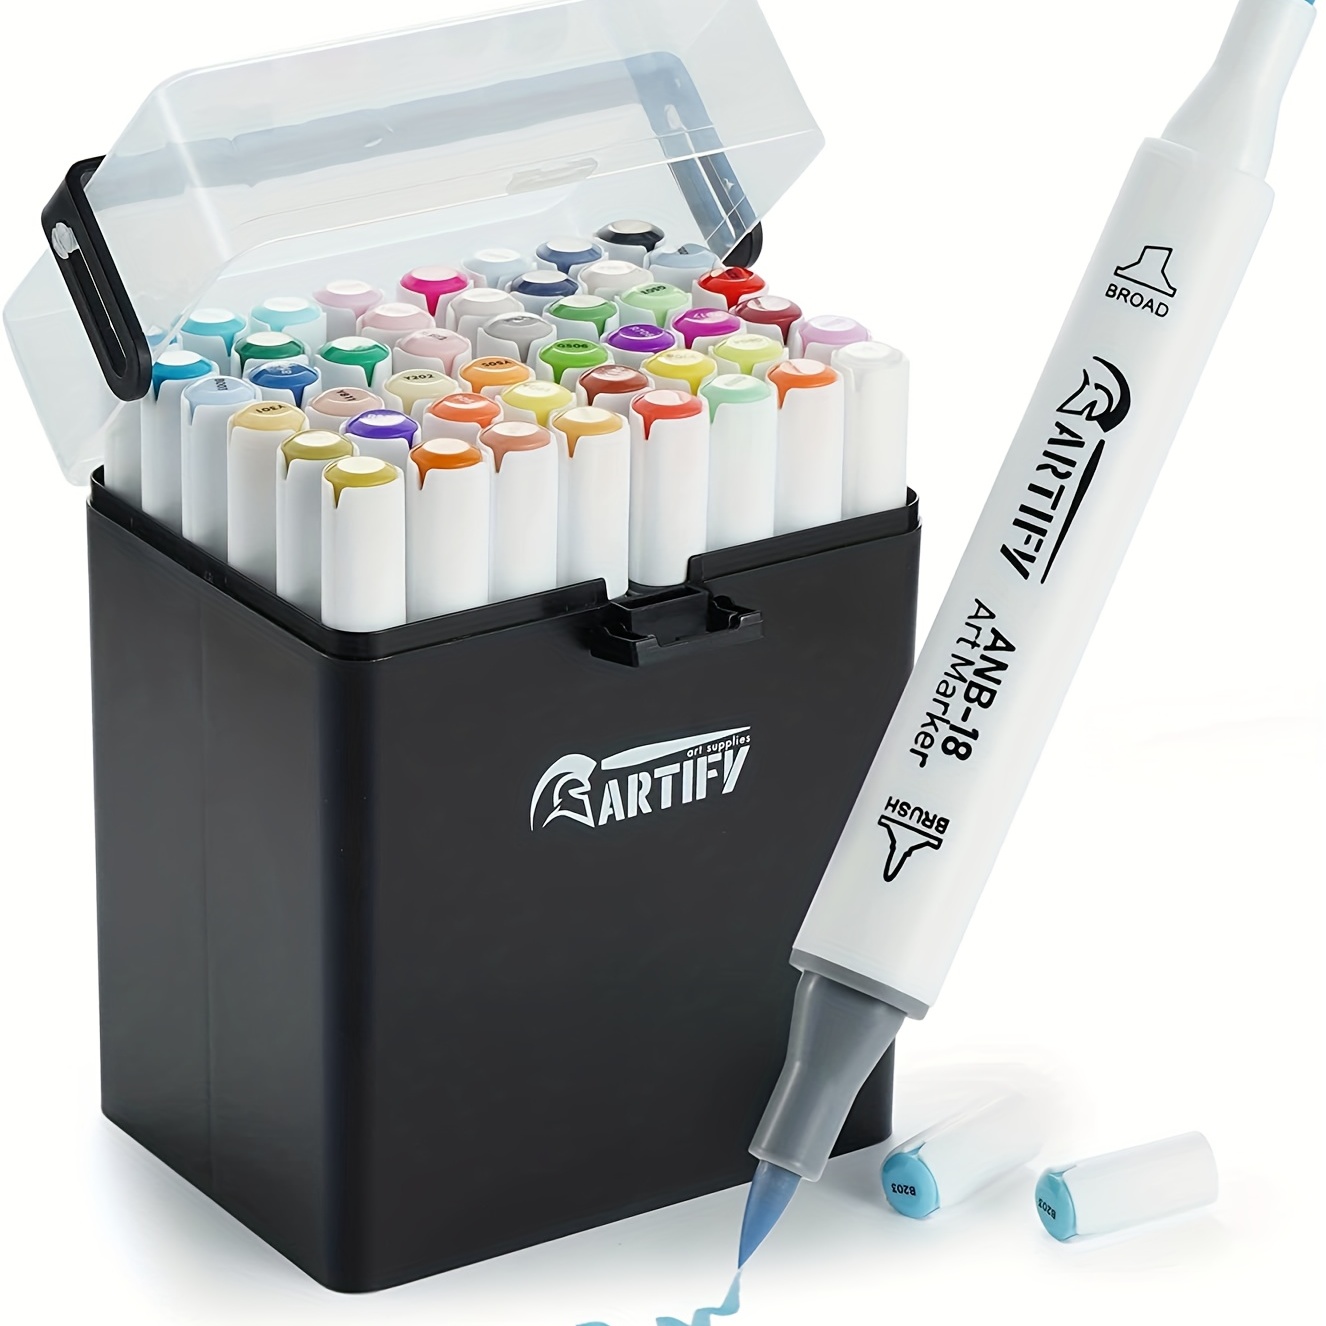  Artify 80 Colors Artist Alcohol Based Art Marker Set